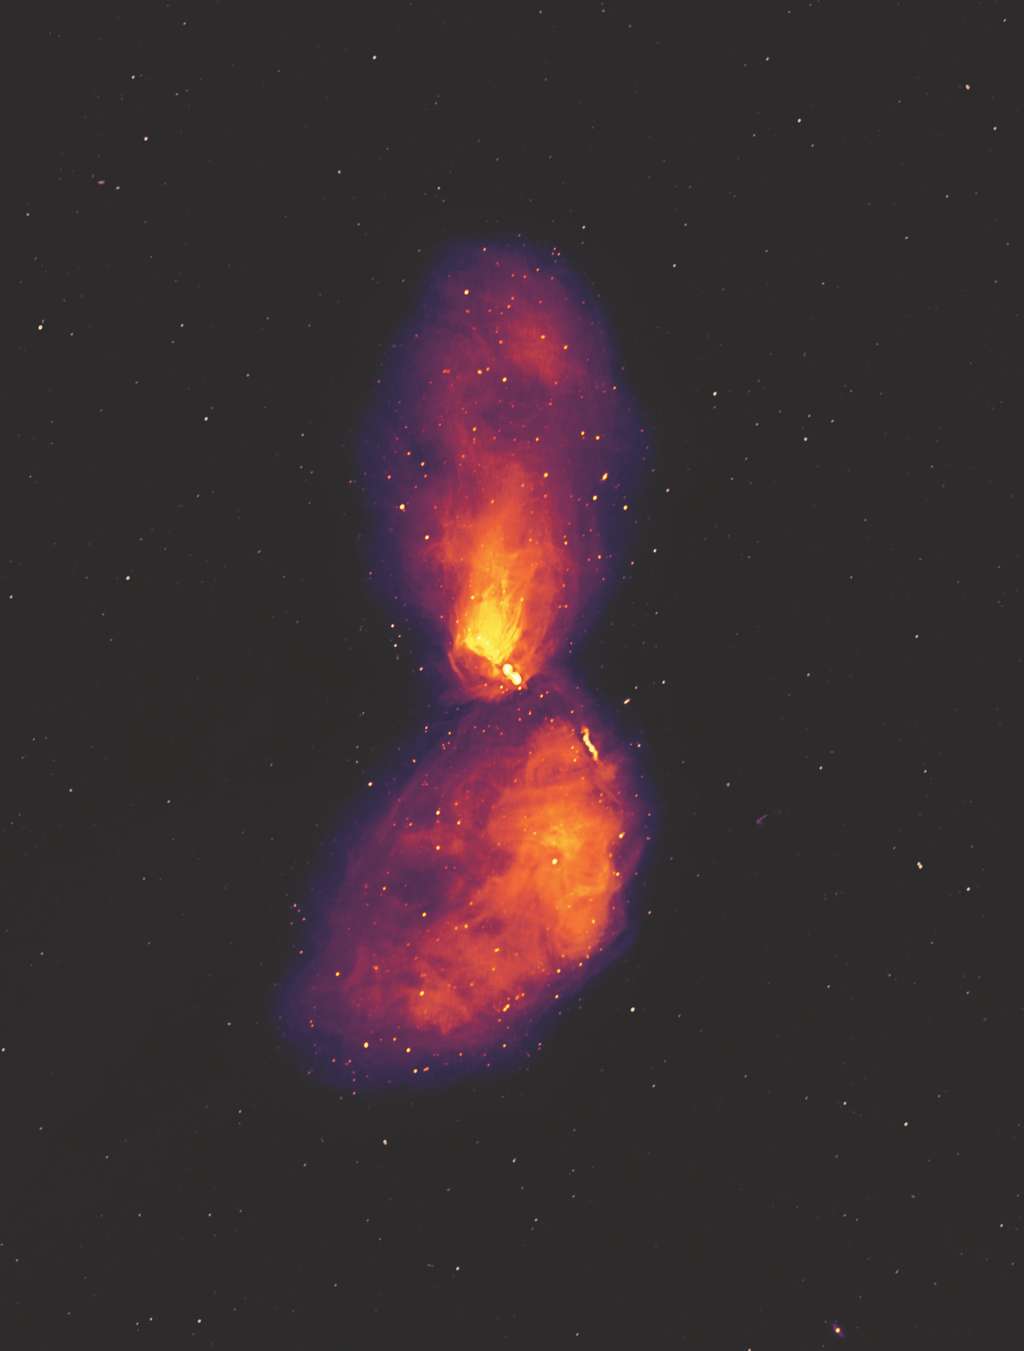  Cette image montre la galaxie Centaurus A à des longueurs d'onde radio, révélant de vastes lobes de plasma qui s'étendent bien au-delà de la galaxie visible, qui n'occupe qu'une petite zone au centre de l'image. Les points à l'arrière-plan ne sont pas des étoiles, mais des radiogalaxies un peu comme Centaurus A, à des distances bien plus grandes. © Ben McKinley, ICRAR/Curtin and Connor Matherne, Louisiana State University